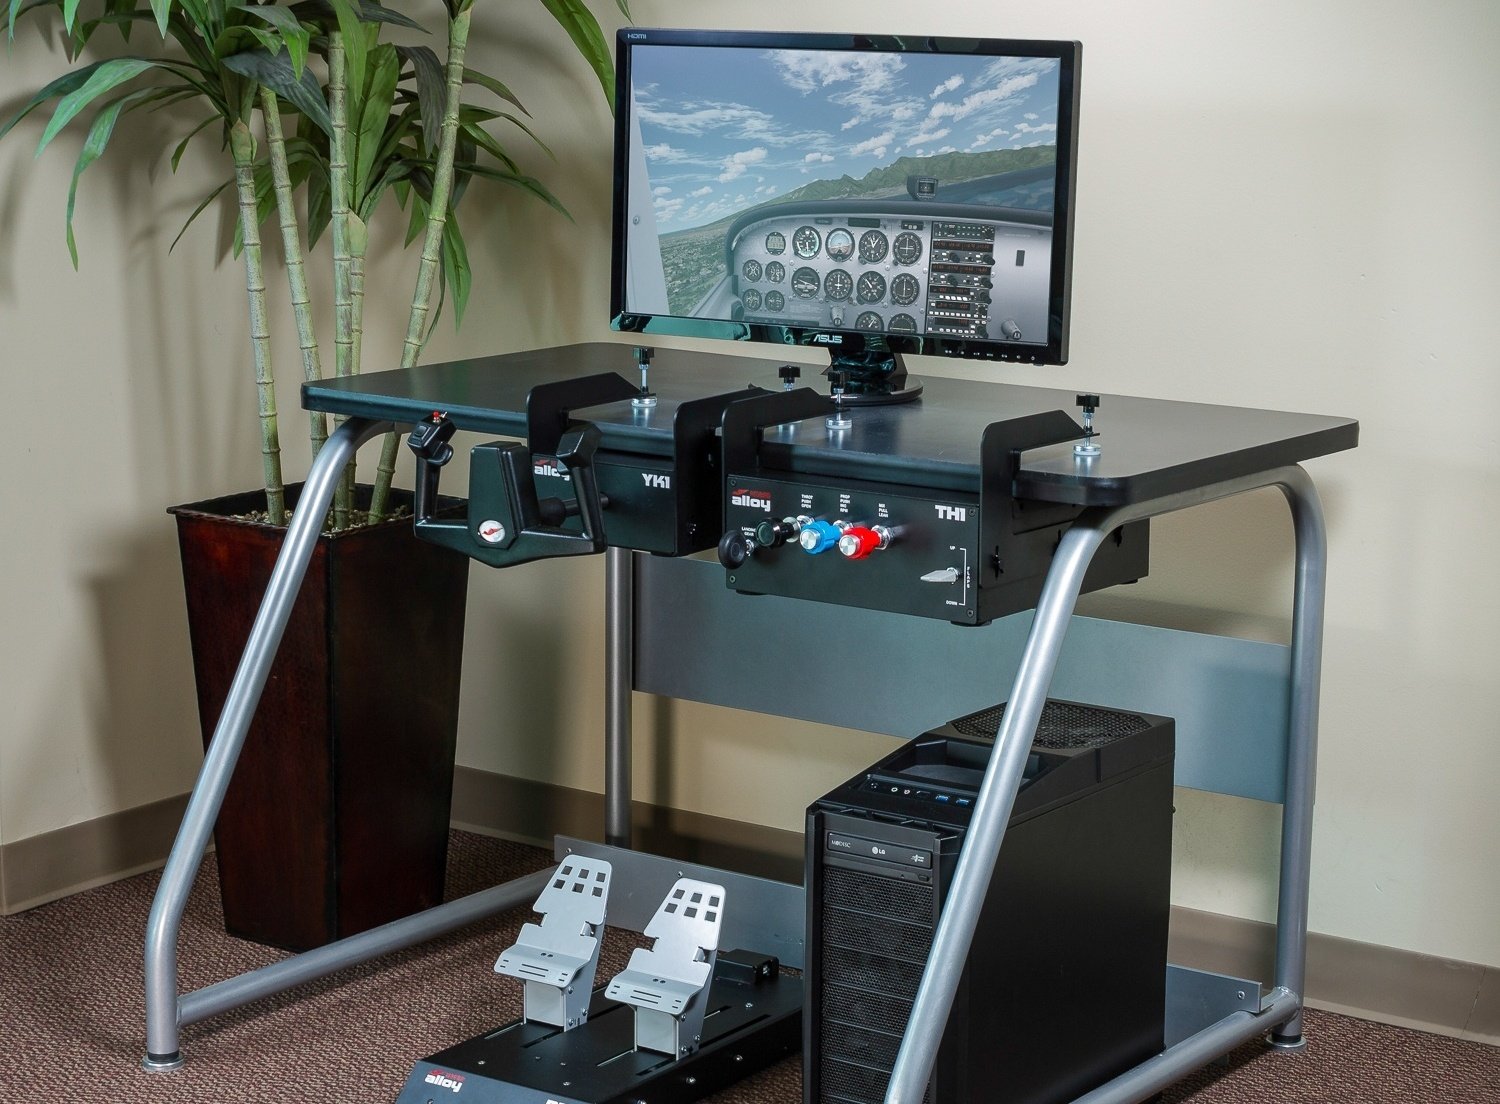 How to Set up a Home Flight Simulator